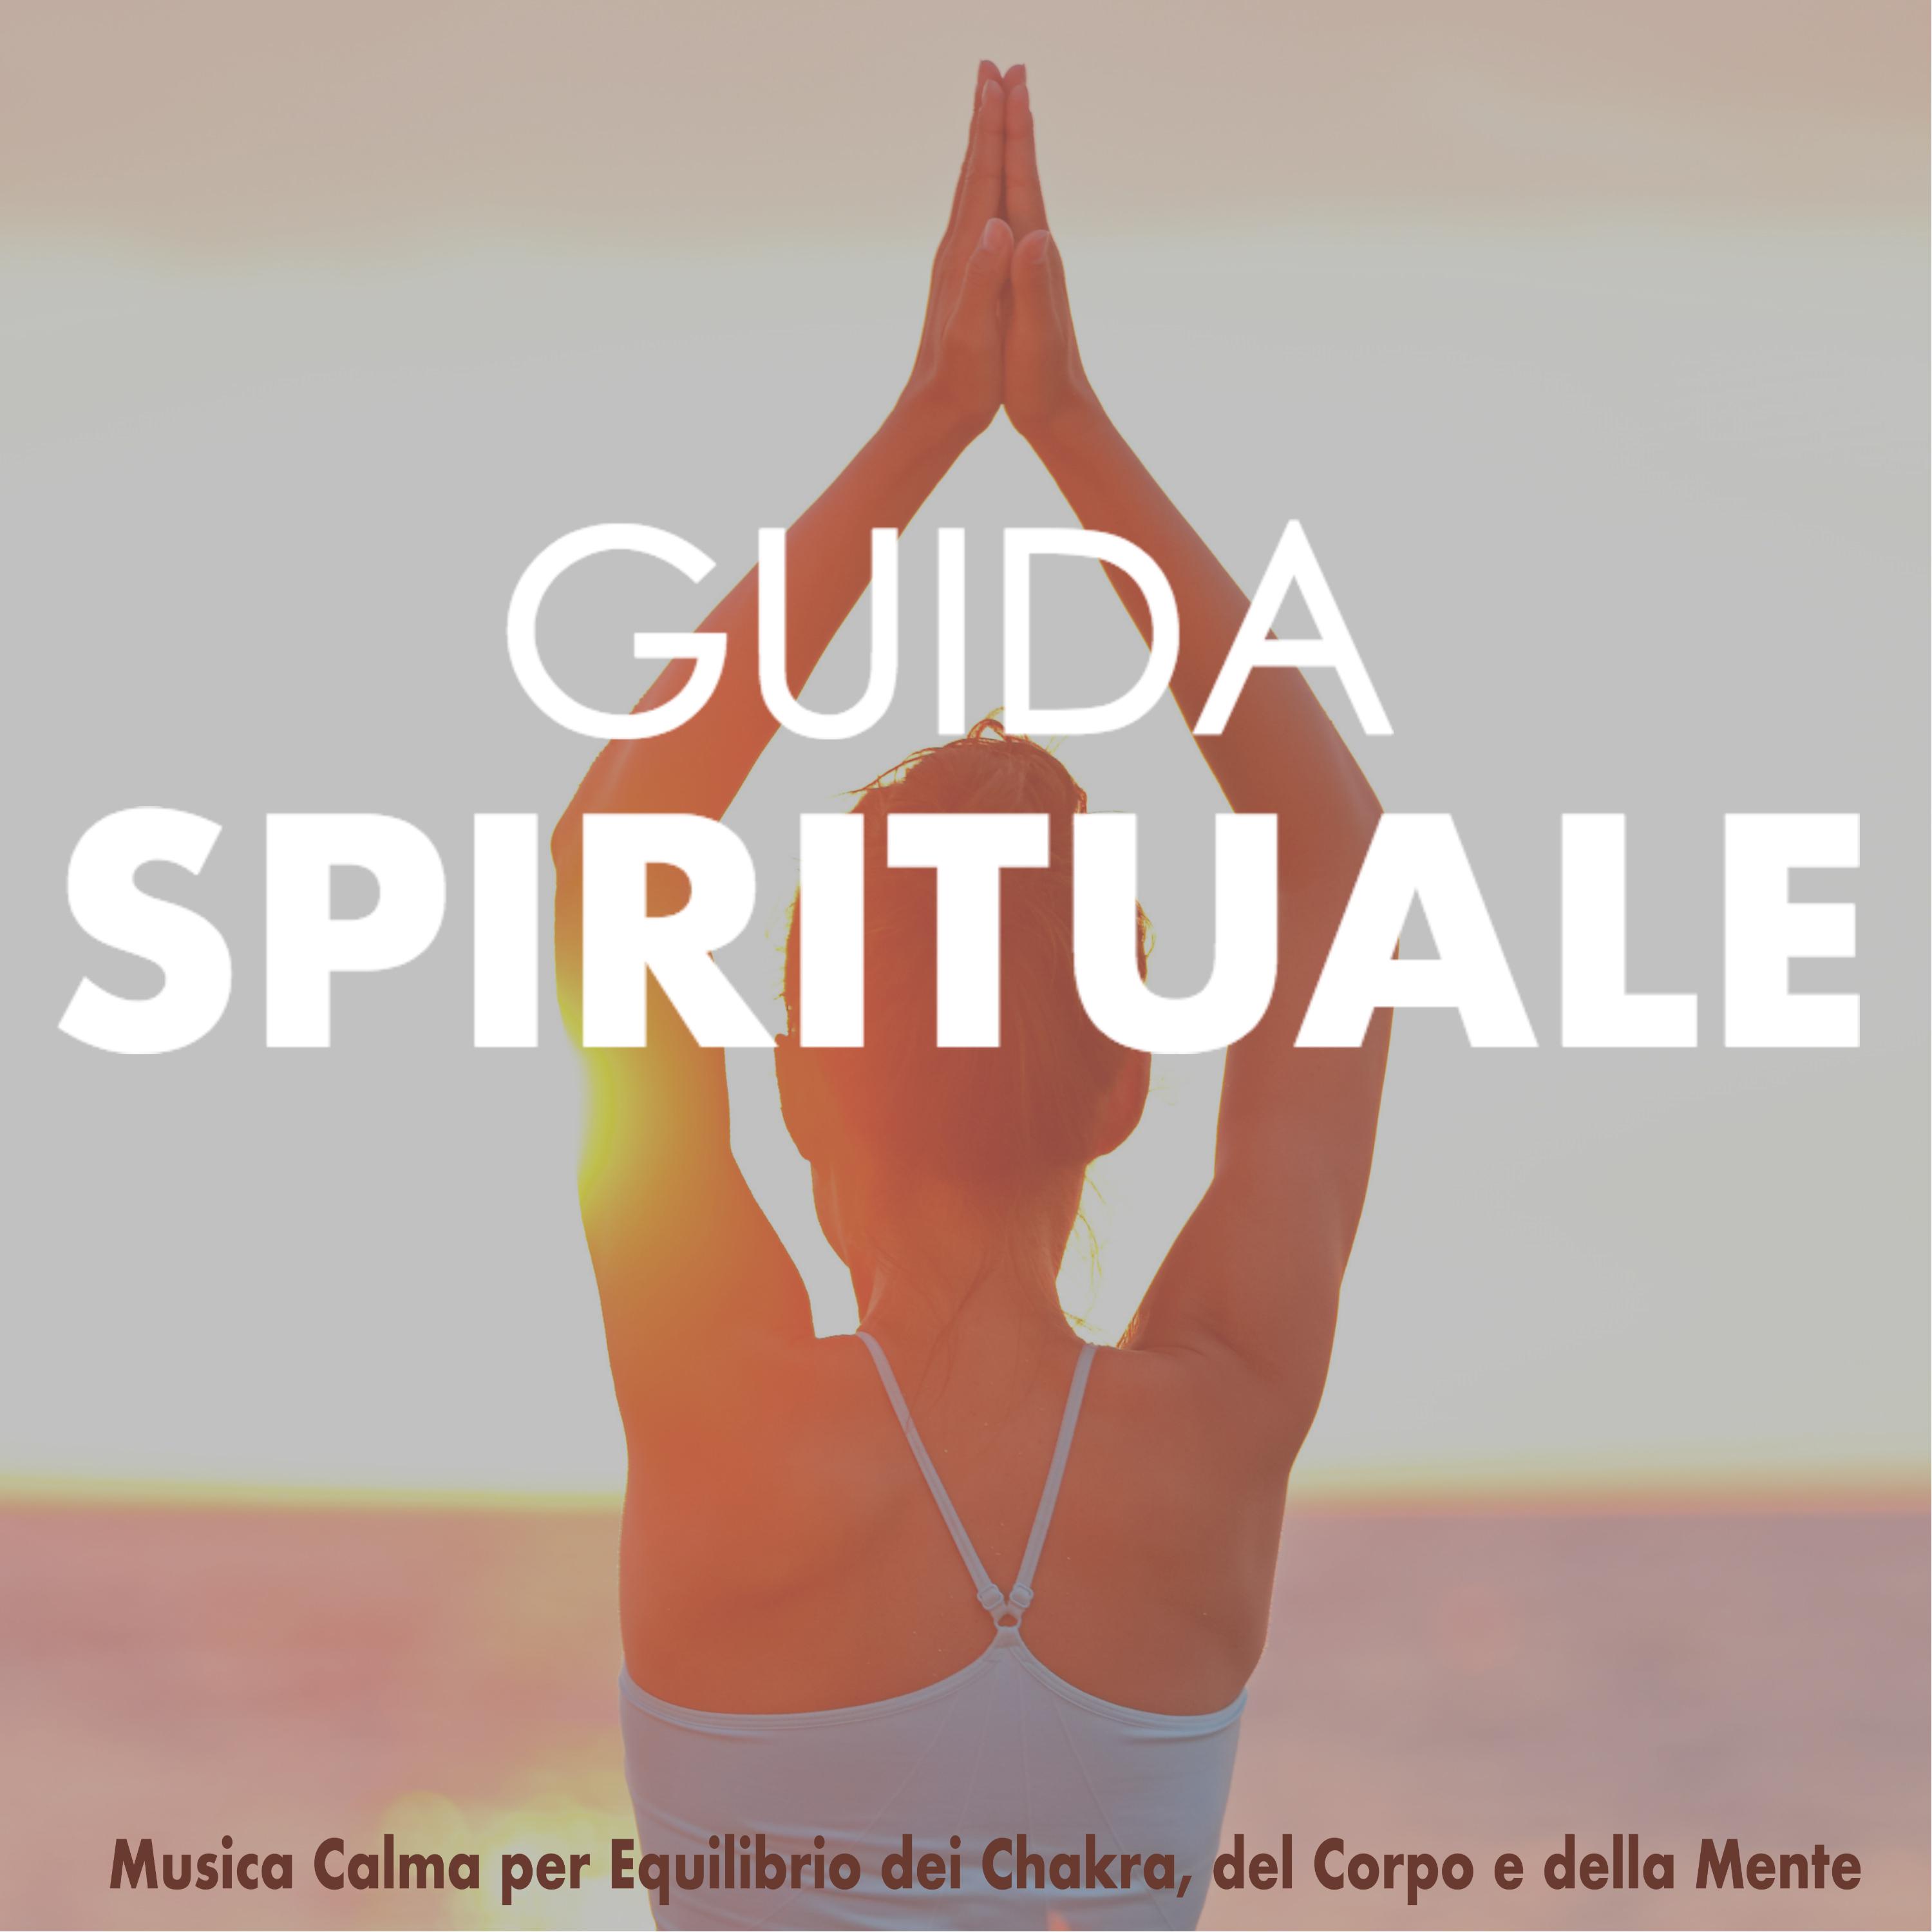 Guida Spirituale - Musica Calma per Equilibrio dei Chakra, del Corpo e della Mente